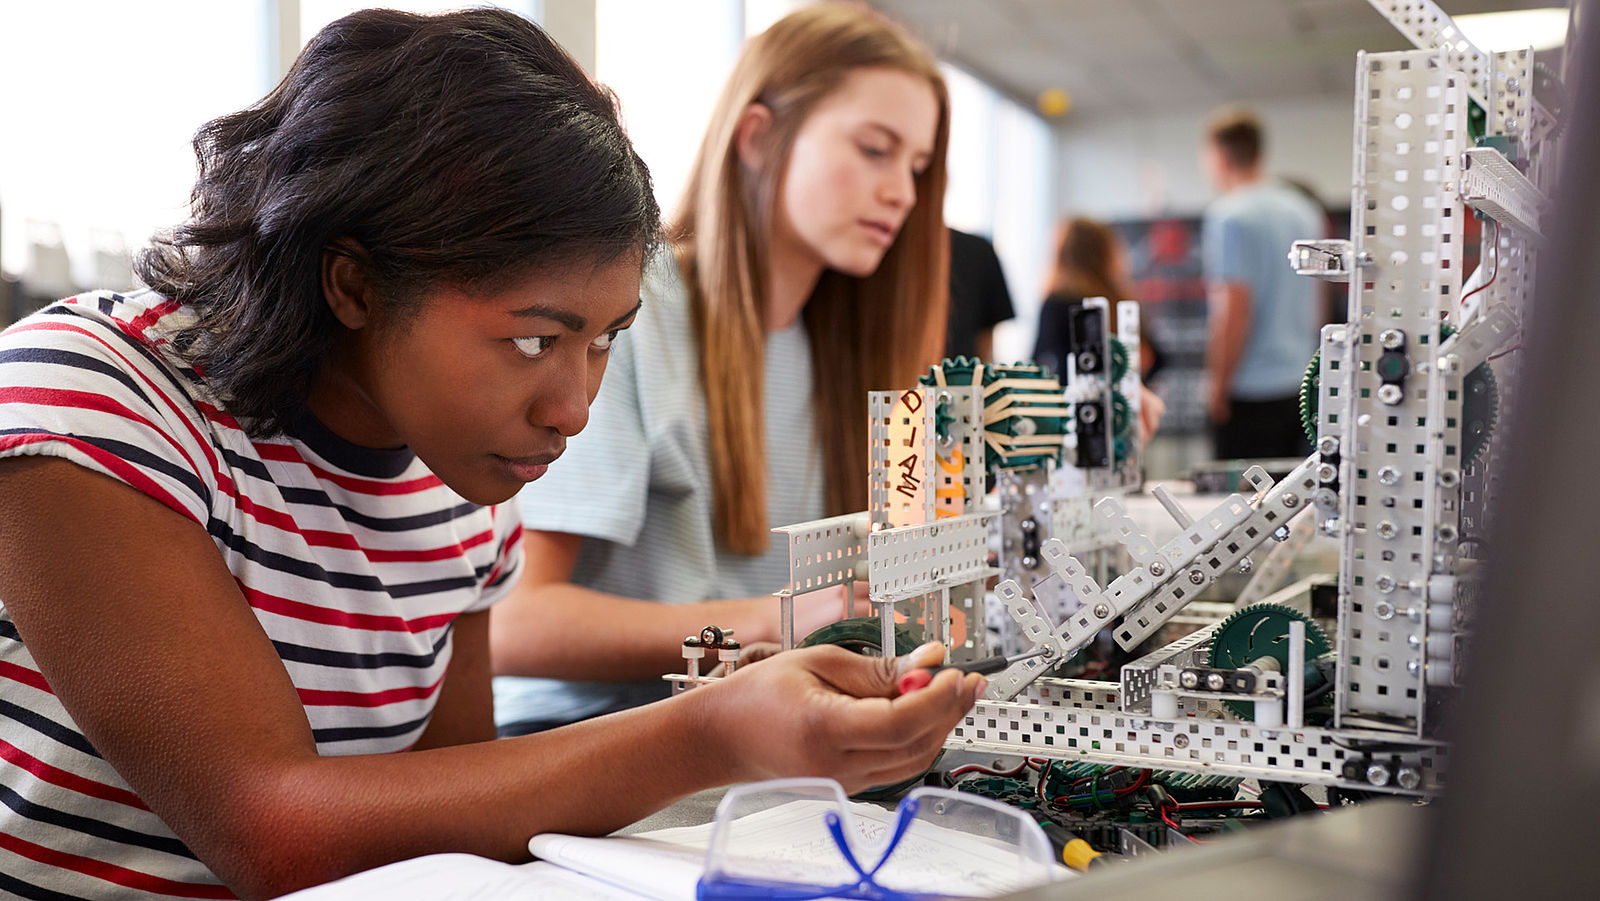 Chance Ingenieurpädagogik: Wissen an Jugendliche weitergeben 